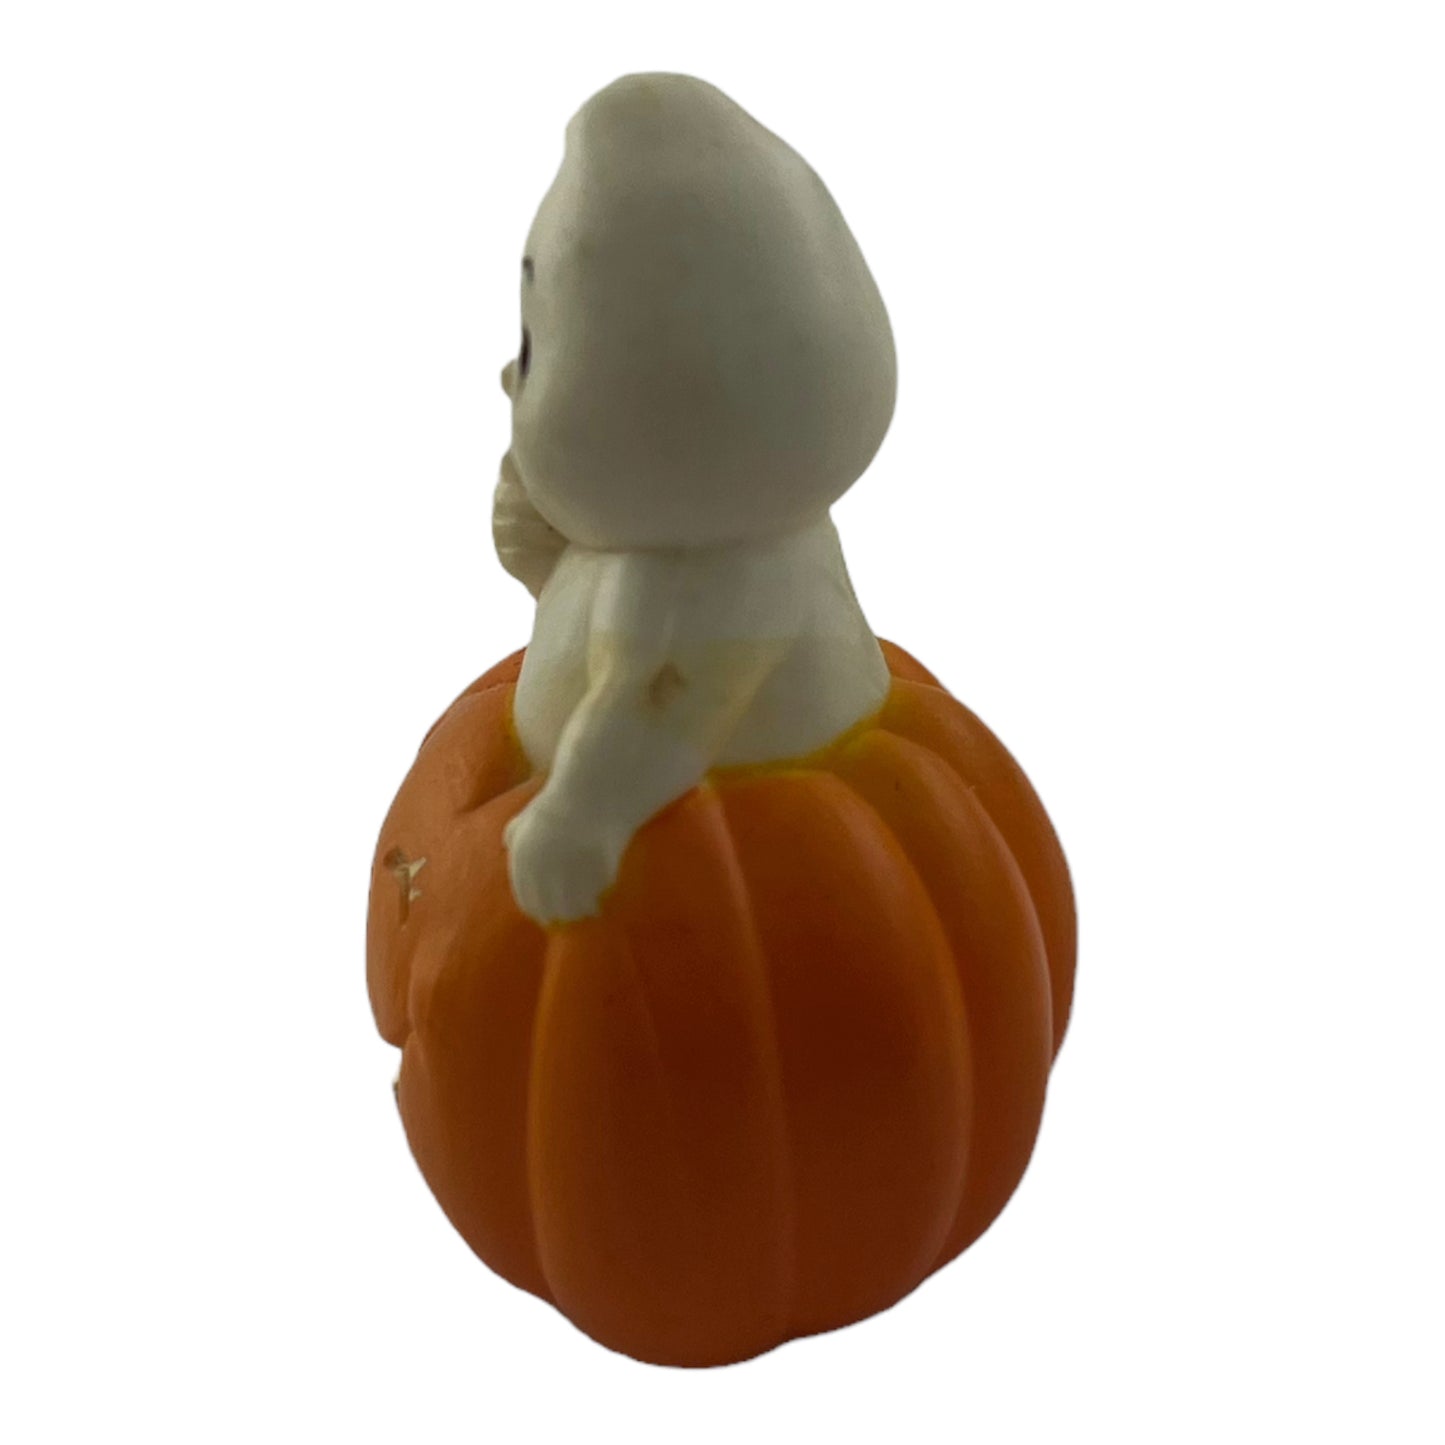 Halloween Ghost in Winking Pumpikn 1.5 Inch Vintage Ceramic Figurine